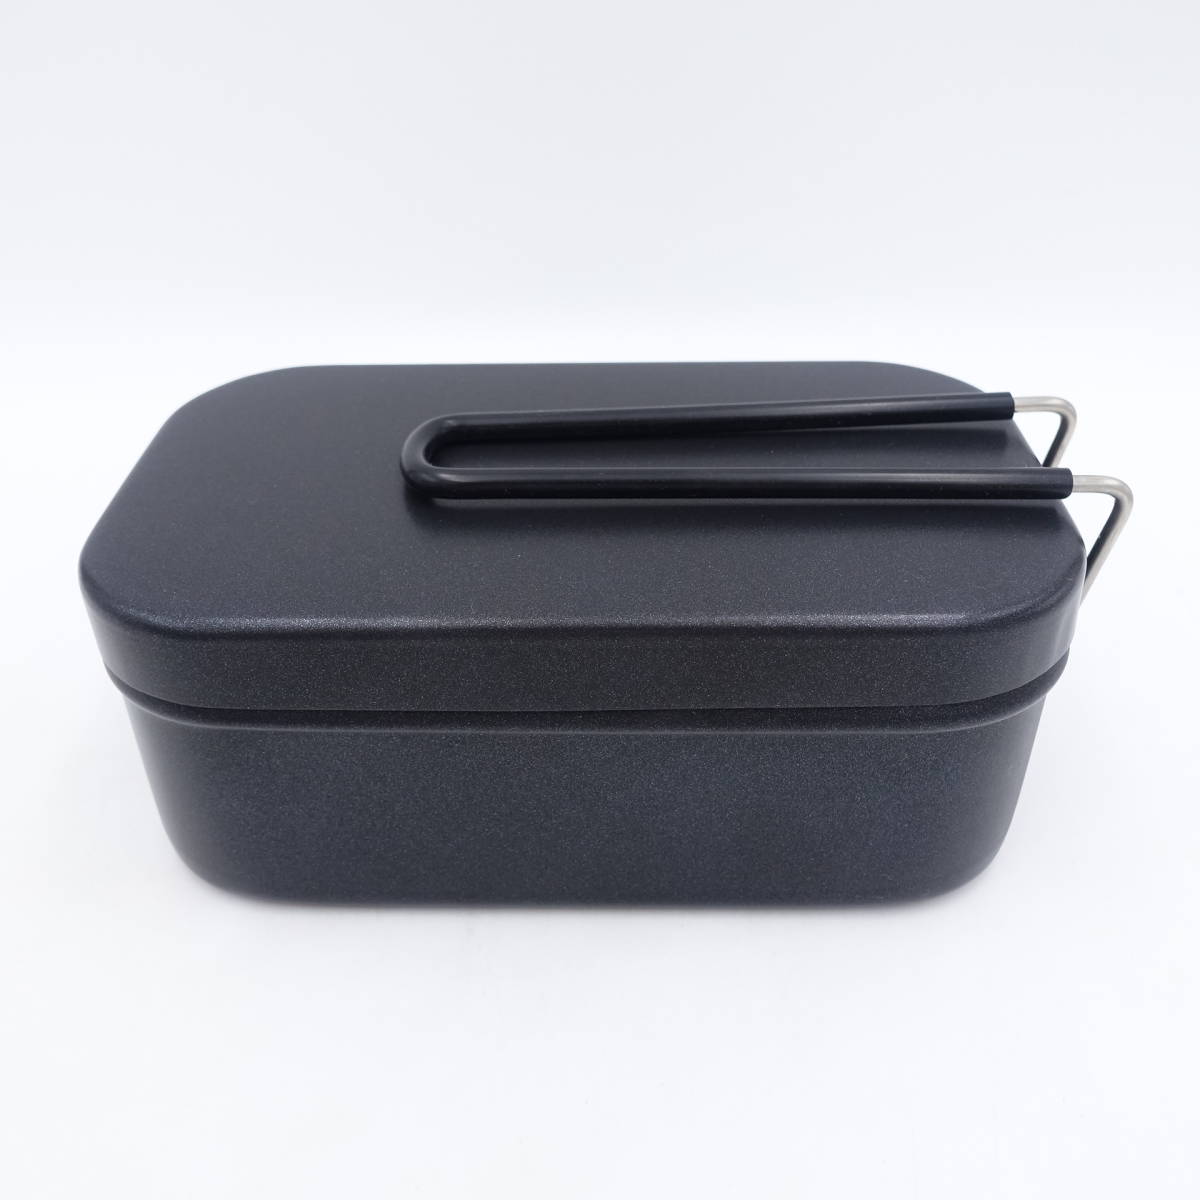 テフロンメスティン 飯盒 スモールサイズ 小/ブラック 黒/ソロ キャンプ用品/アウトドア/約16.5×9.5×6.5cm/2合炊き 約800ml/未使用/12862